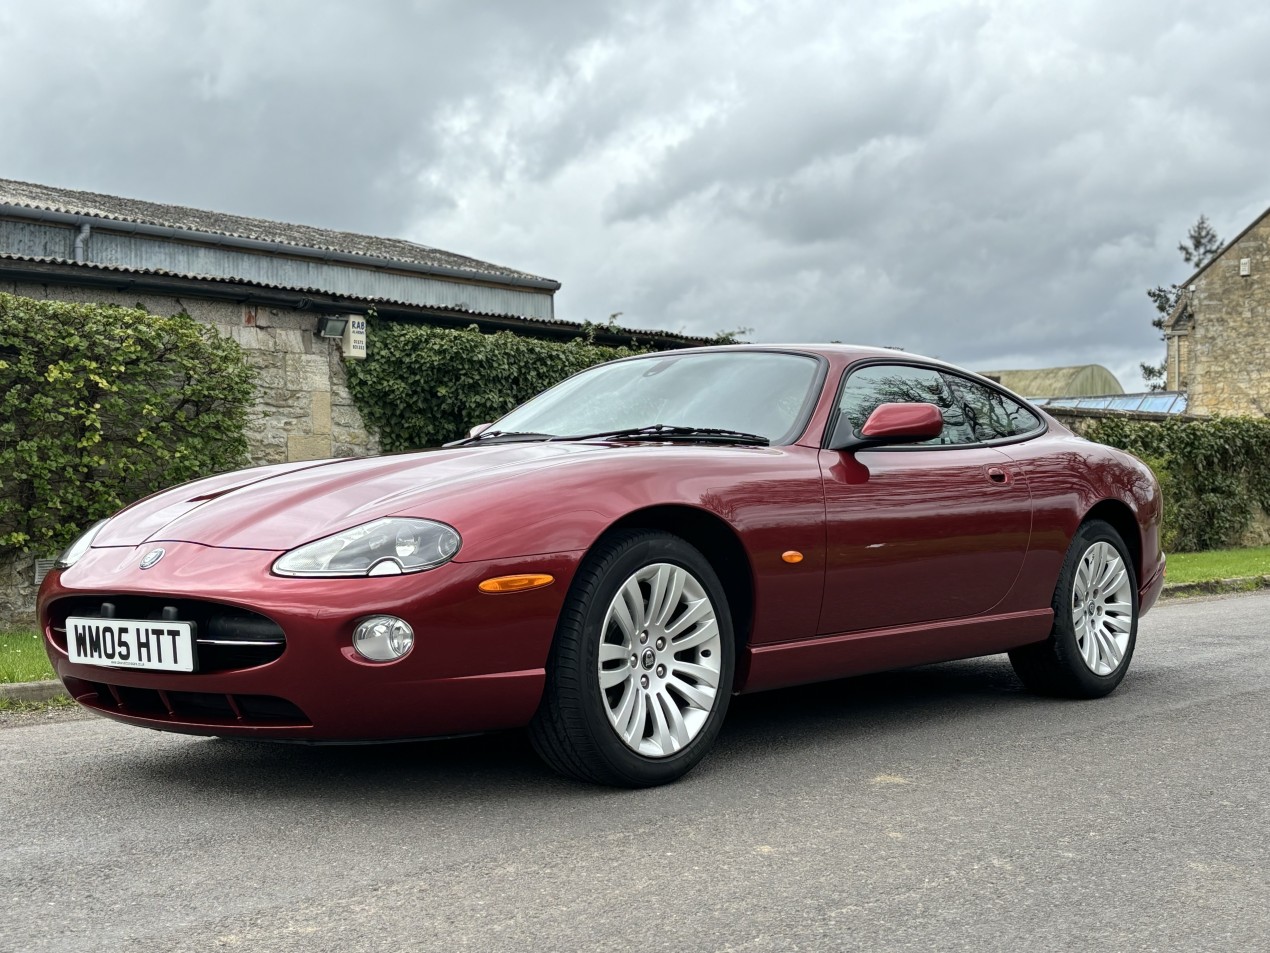 <a href="https://dillybrook.co.uk/product/2004-jaguar-xk8-4-2-v8-coupe/">2005 Jaguar XK8 4.2 V8 Coupe  1Owner 46000 miles</a>